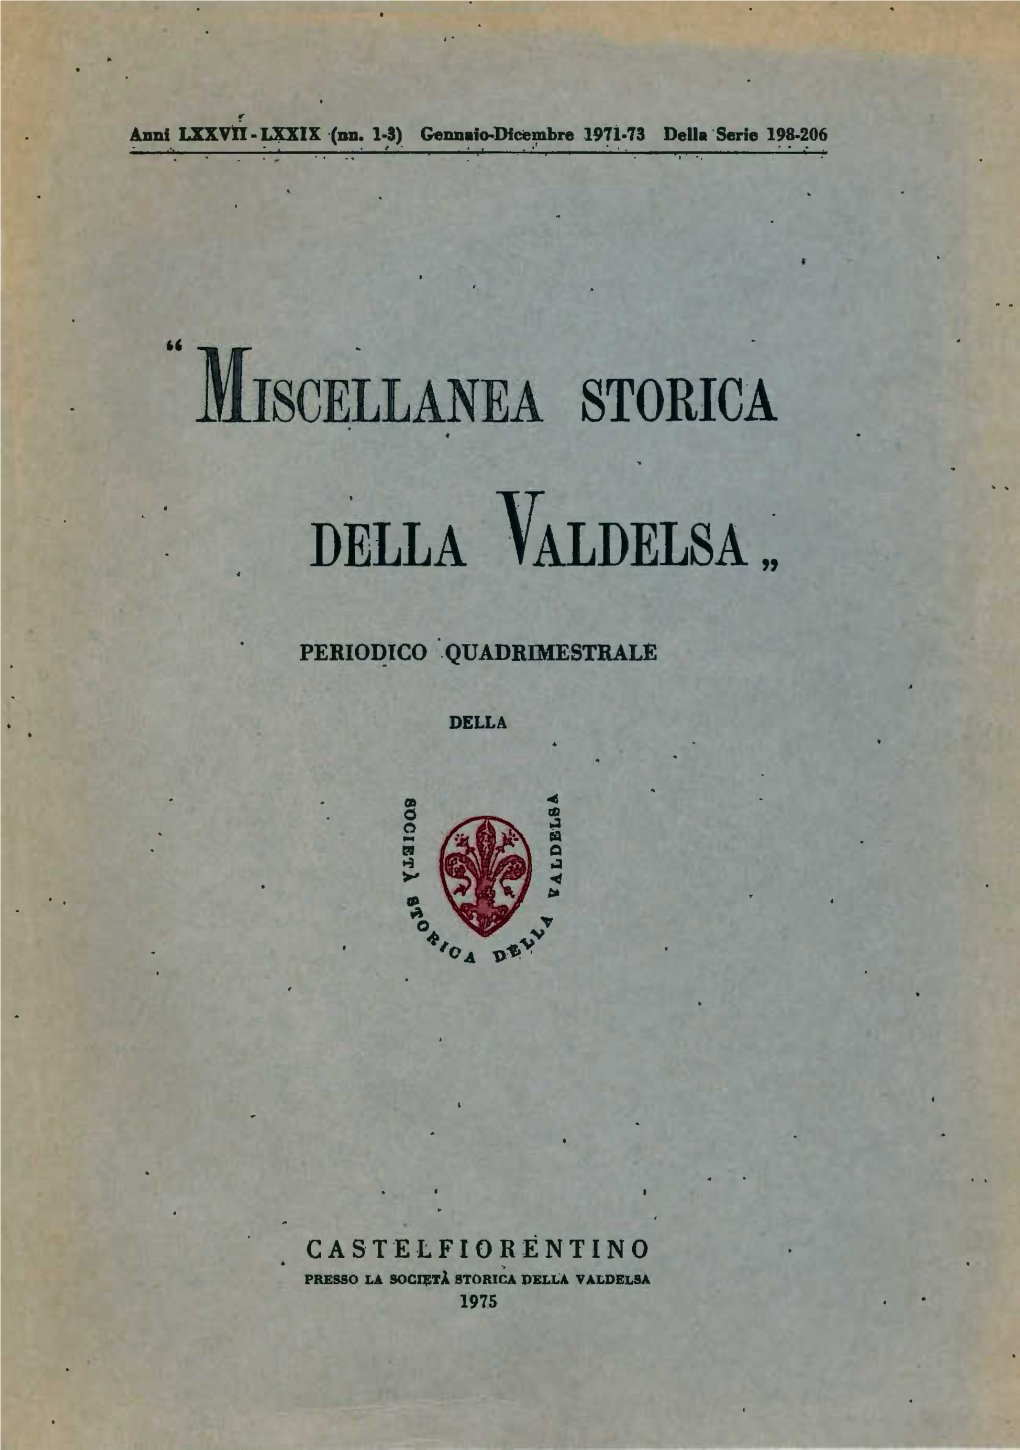 Miscellanea Storica Della Valdelsa "